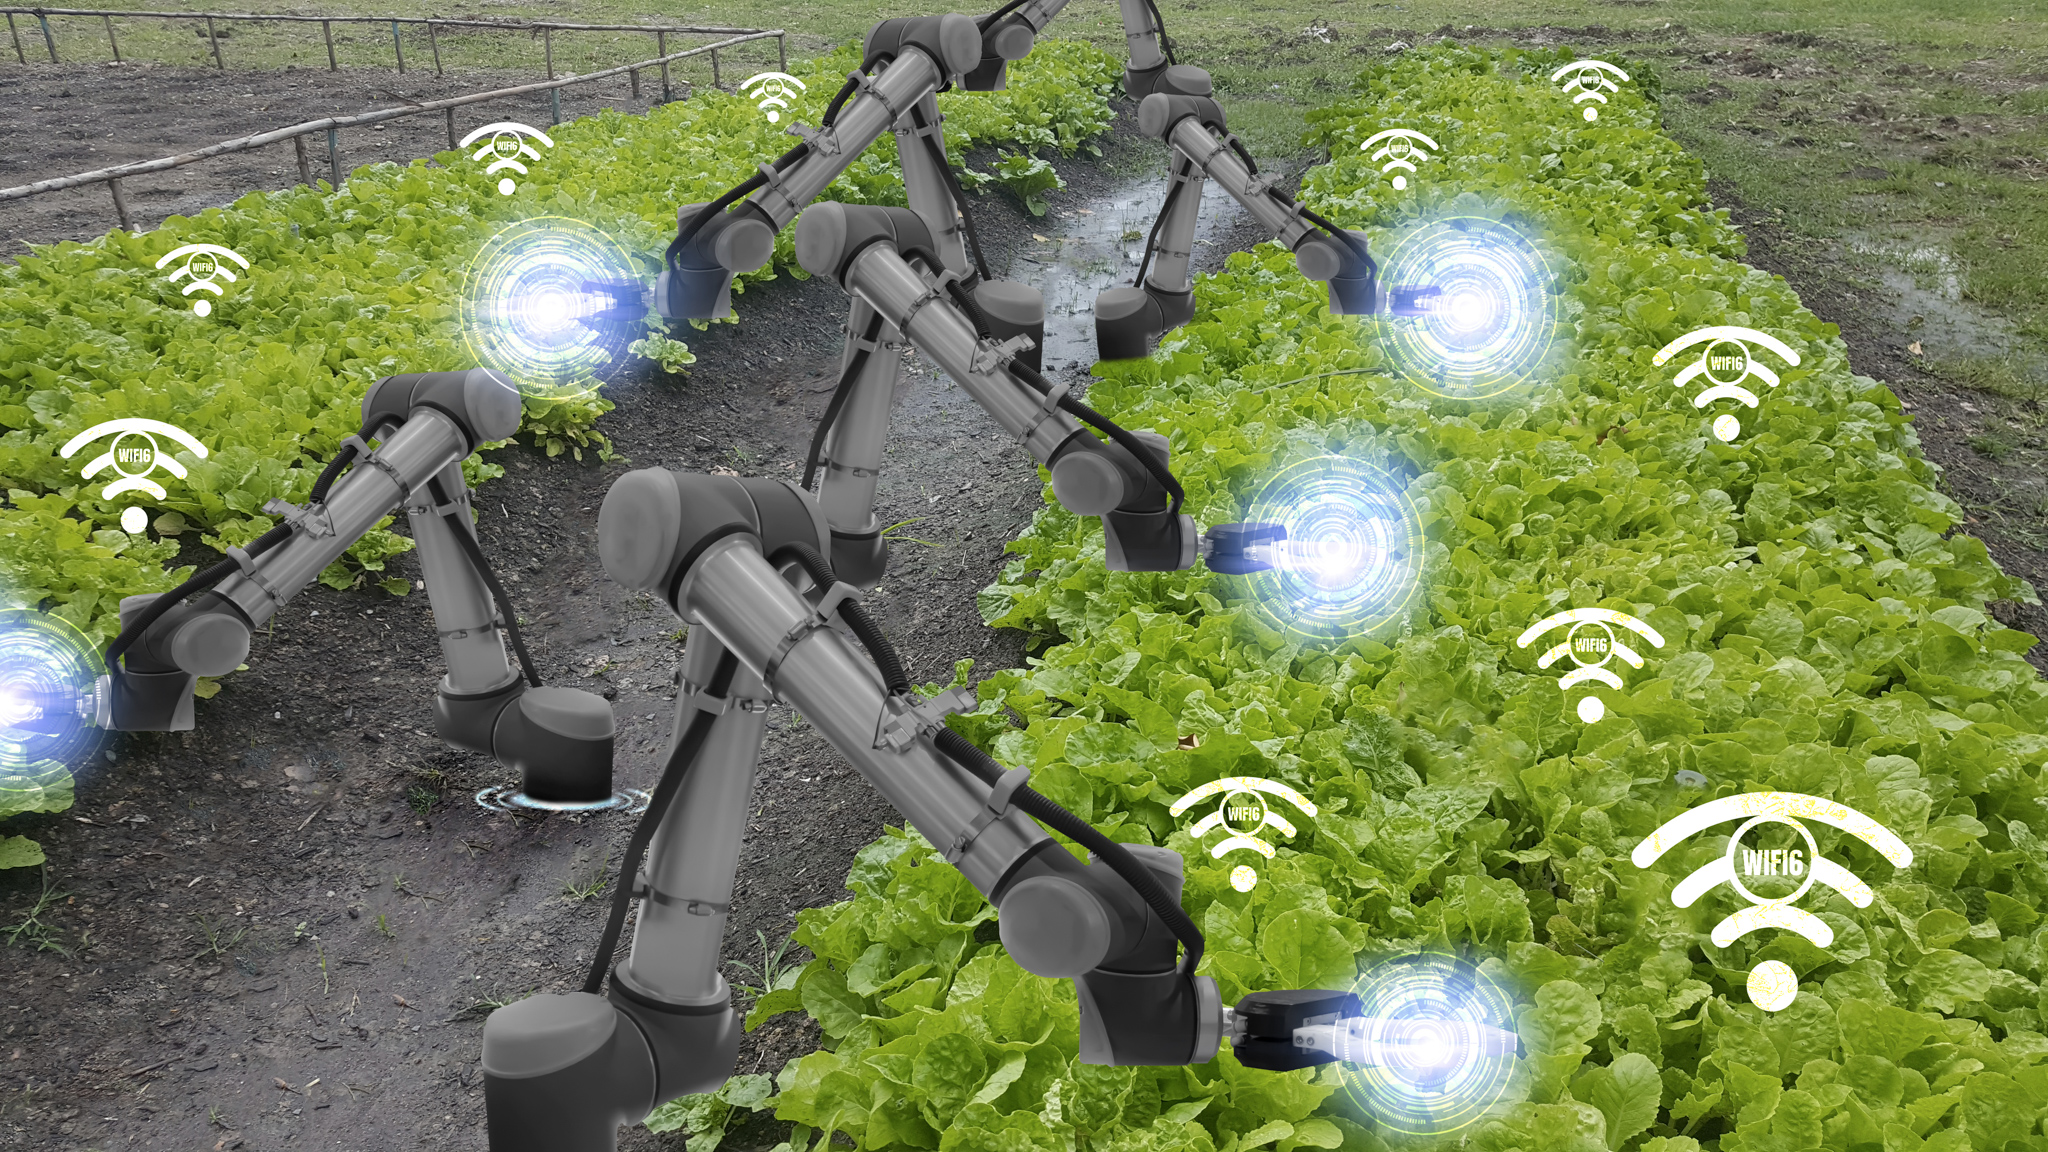 Automated farm machine